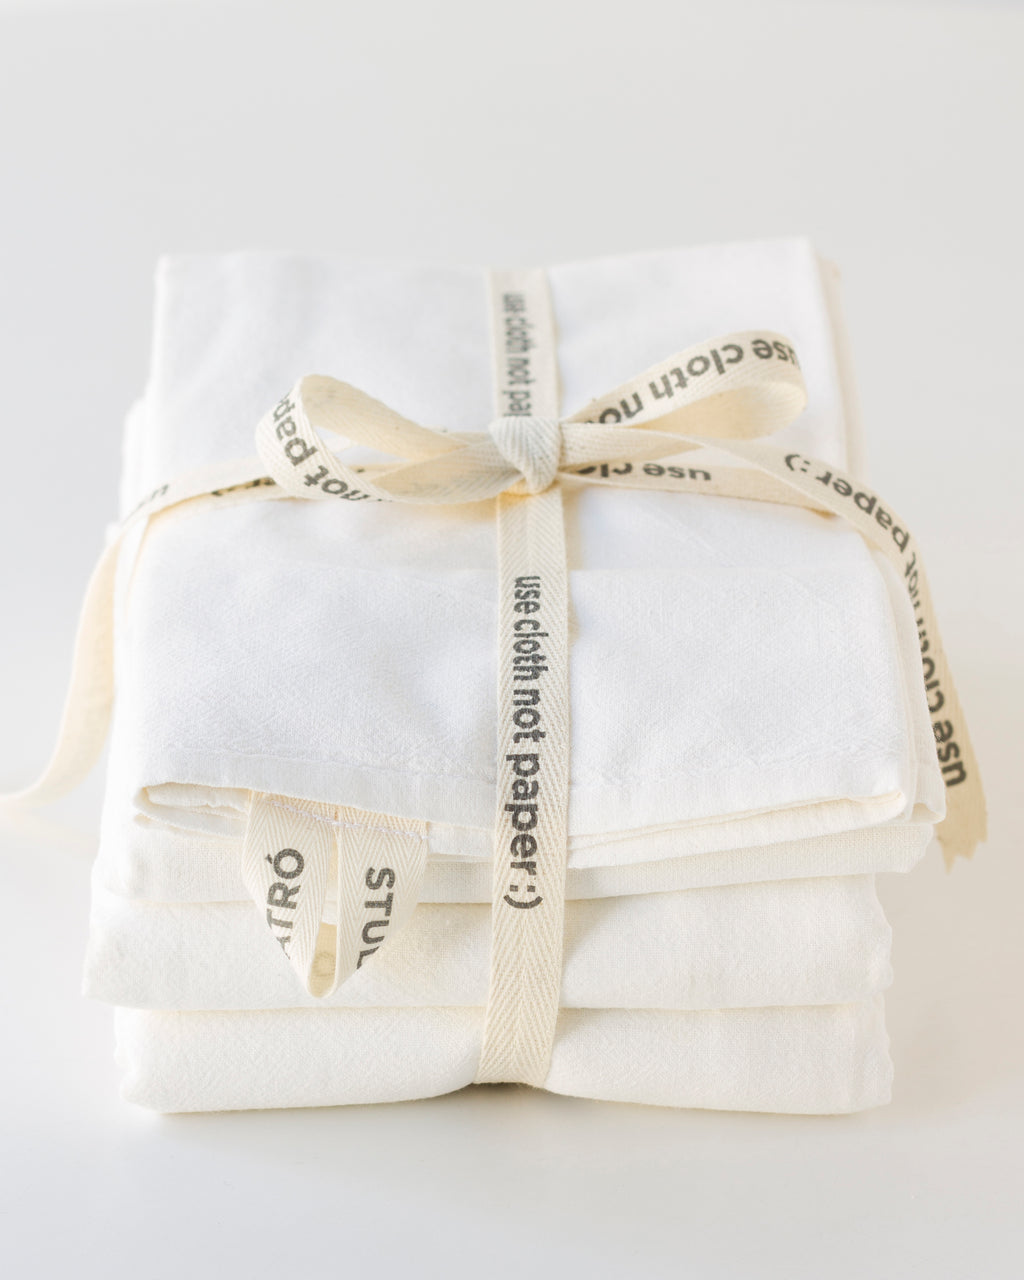 Sur La Table Flour Sack Towels, Set of 3, White